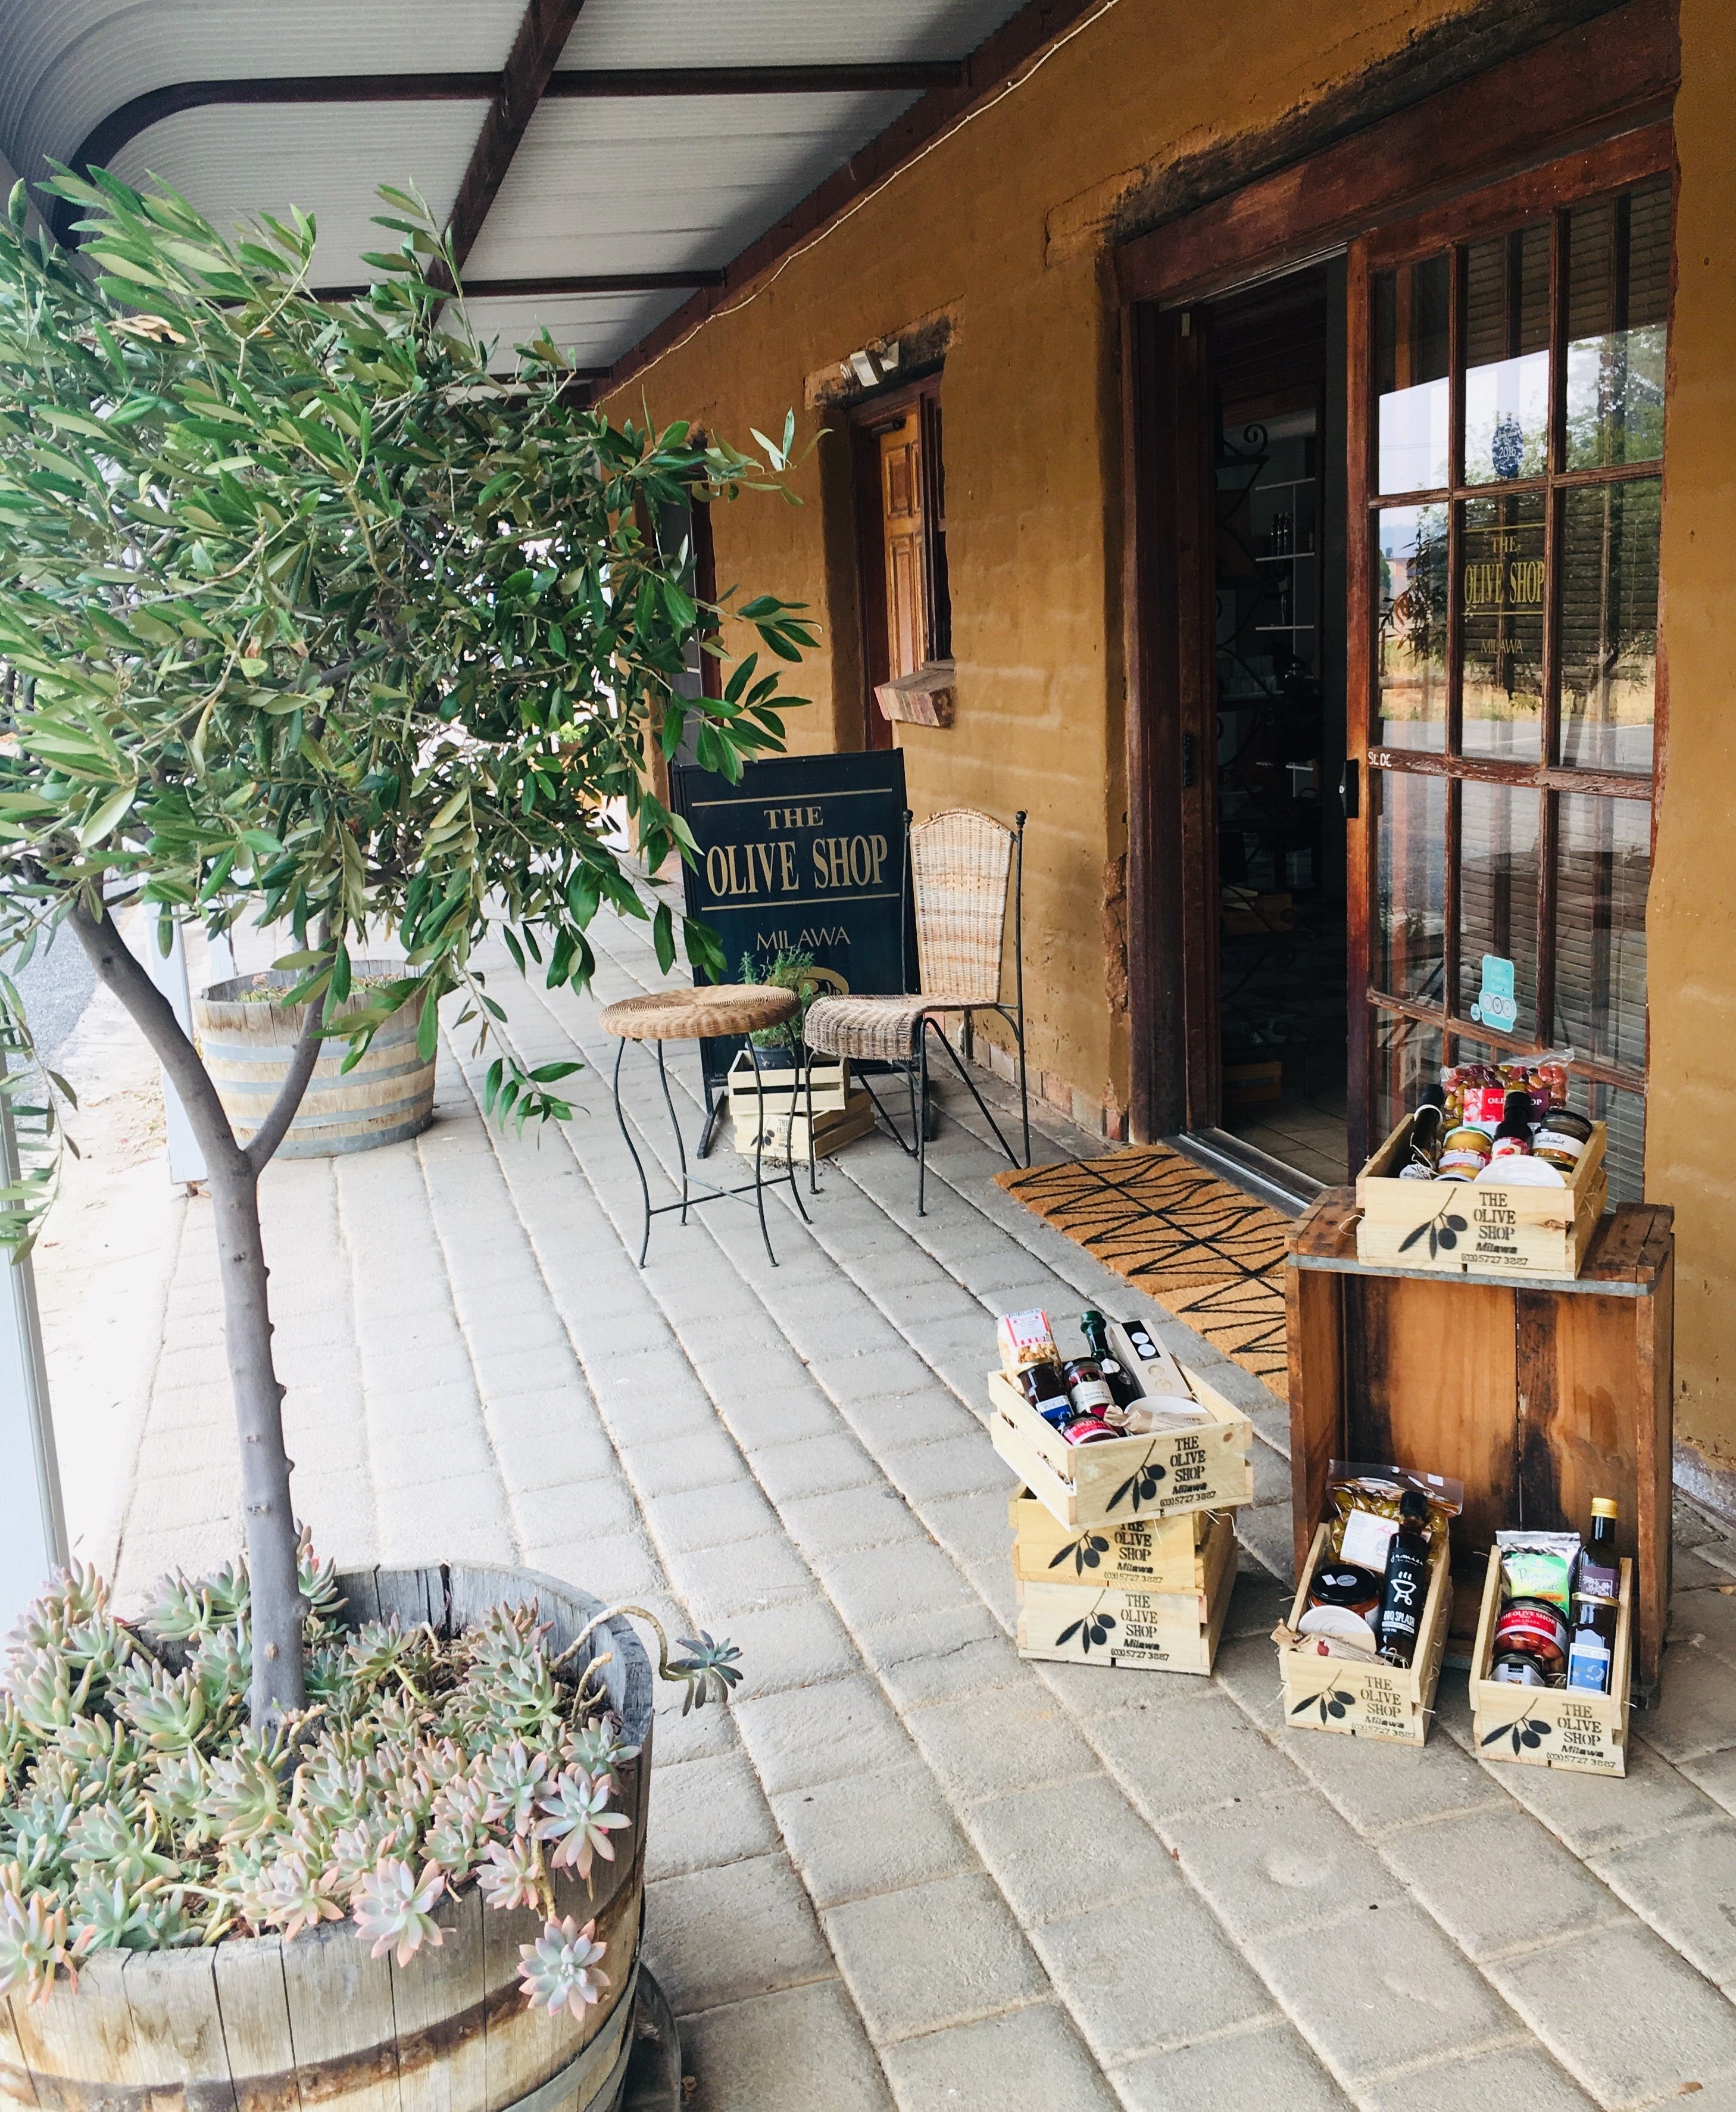 The Olive Shop - Milawa - WA Accommodation